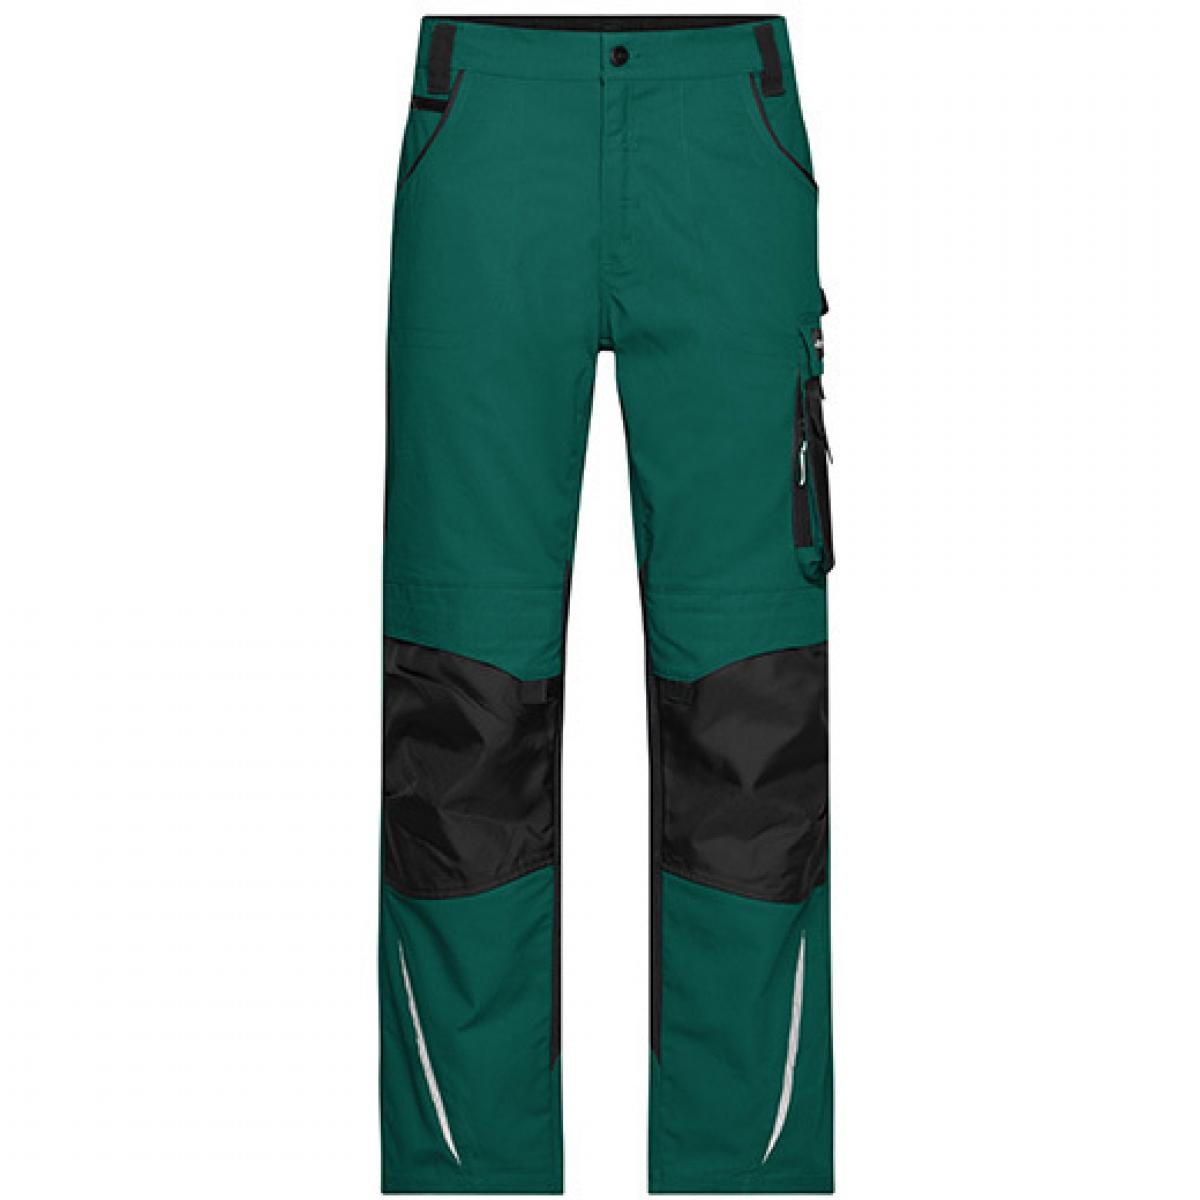 Hersteller: James+Nicholson Herstellernummer: JN832 Artikelbezeichnung: Workwear Pants -STRONG- / Arbeitshose lang Farbe: Dark Green/Black